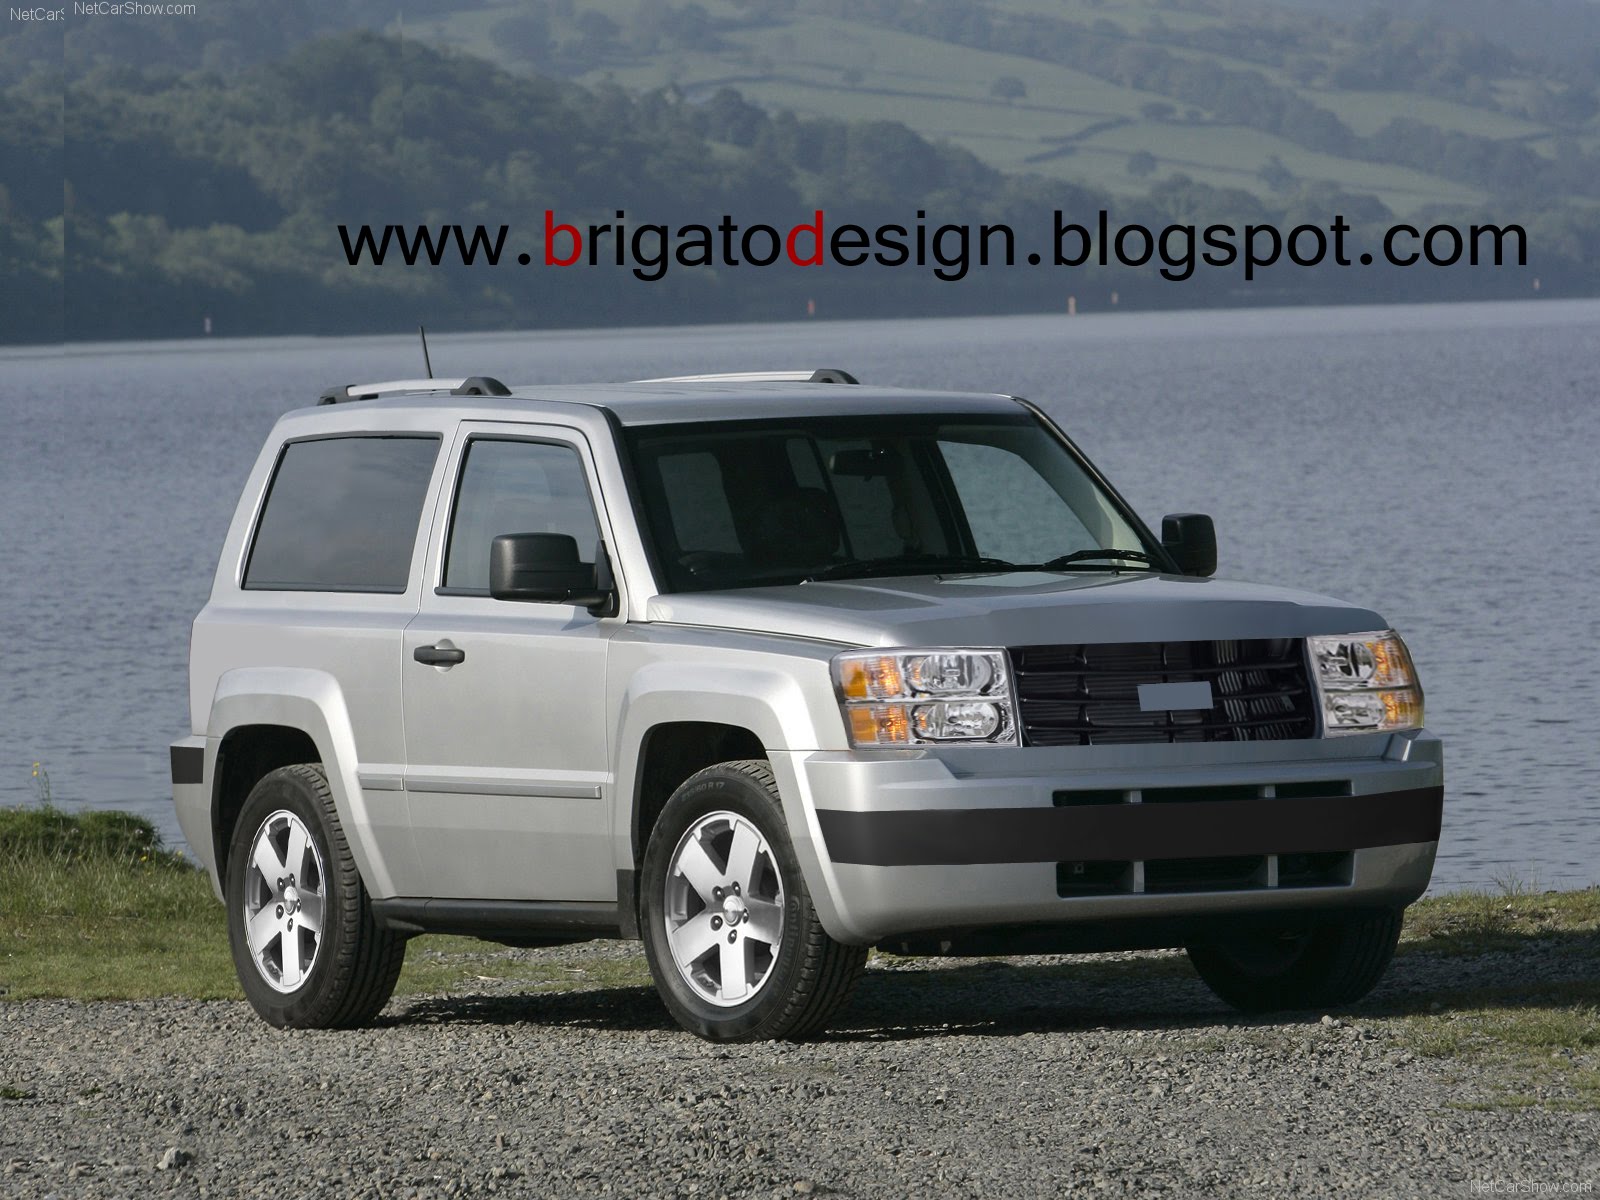 Nissan Caravan 30TDi. View Download Wallpaper. 1600x1200. Comments